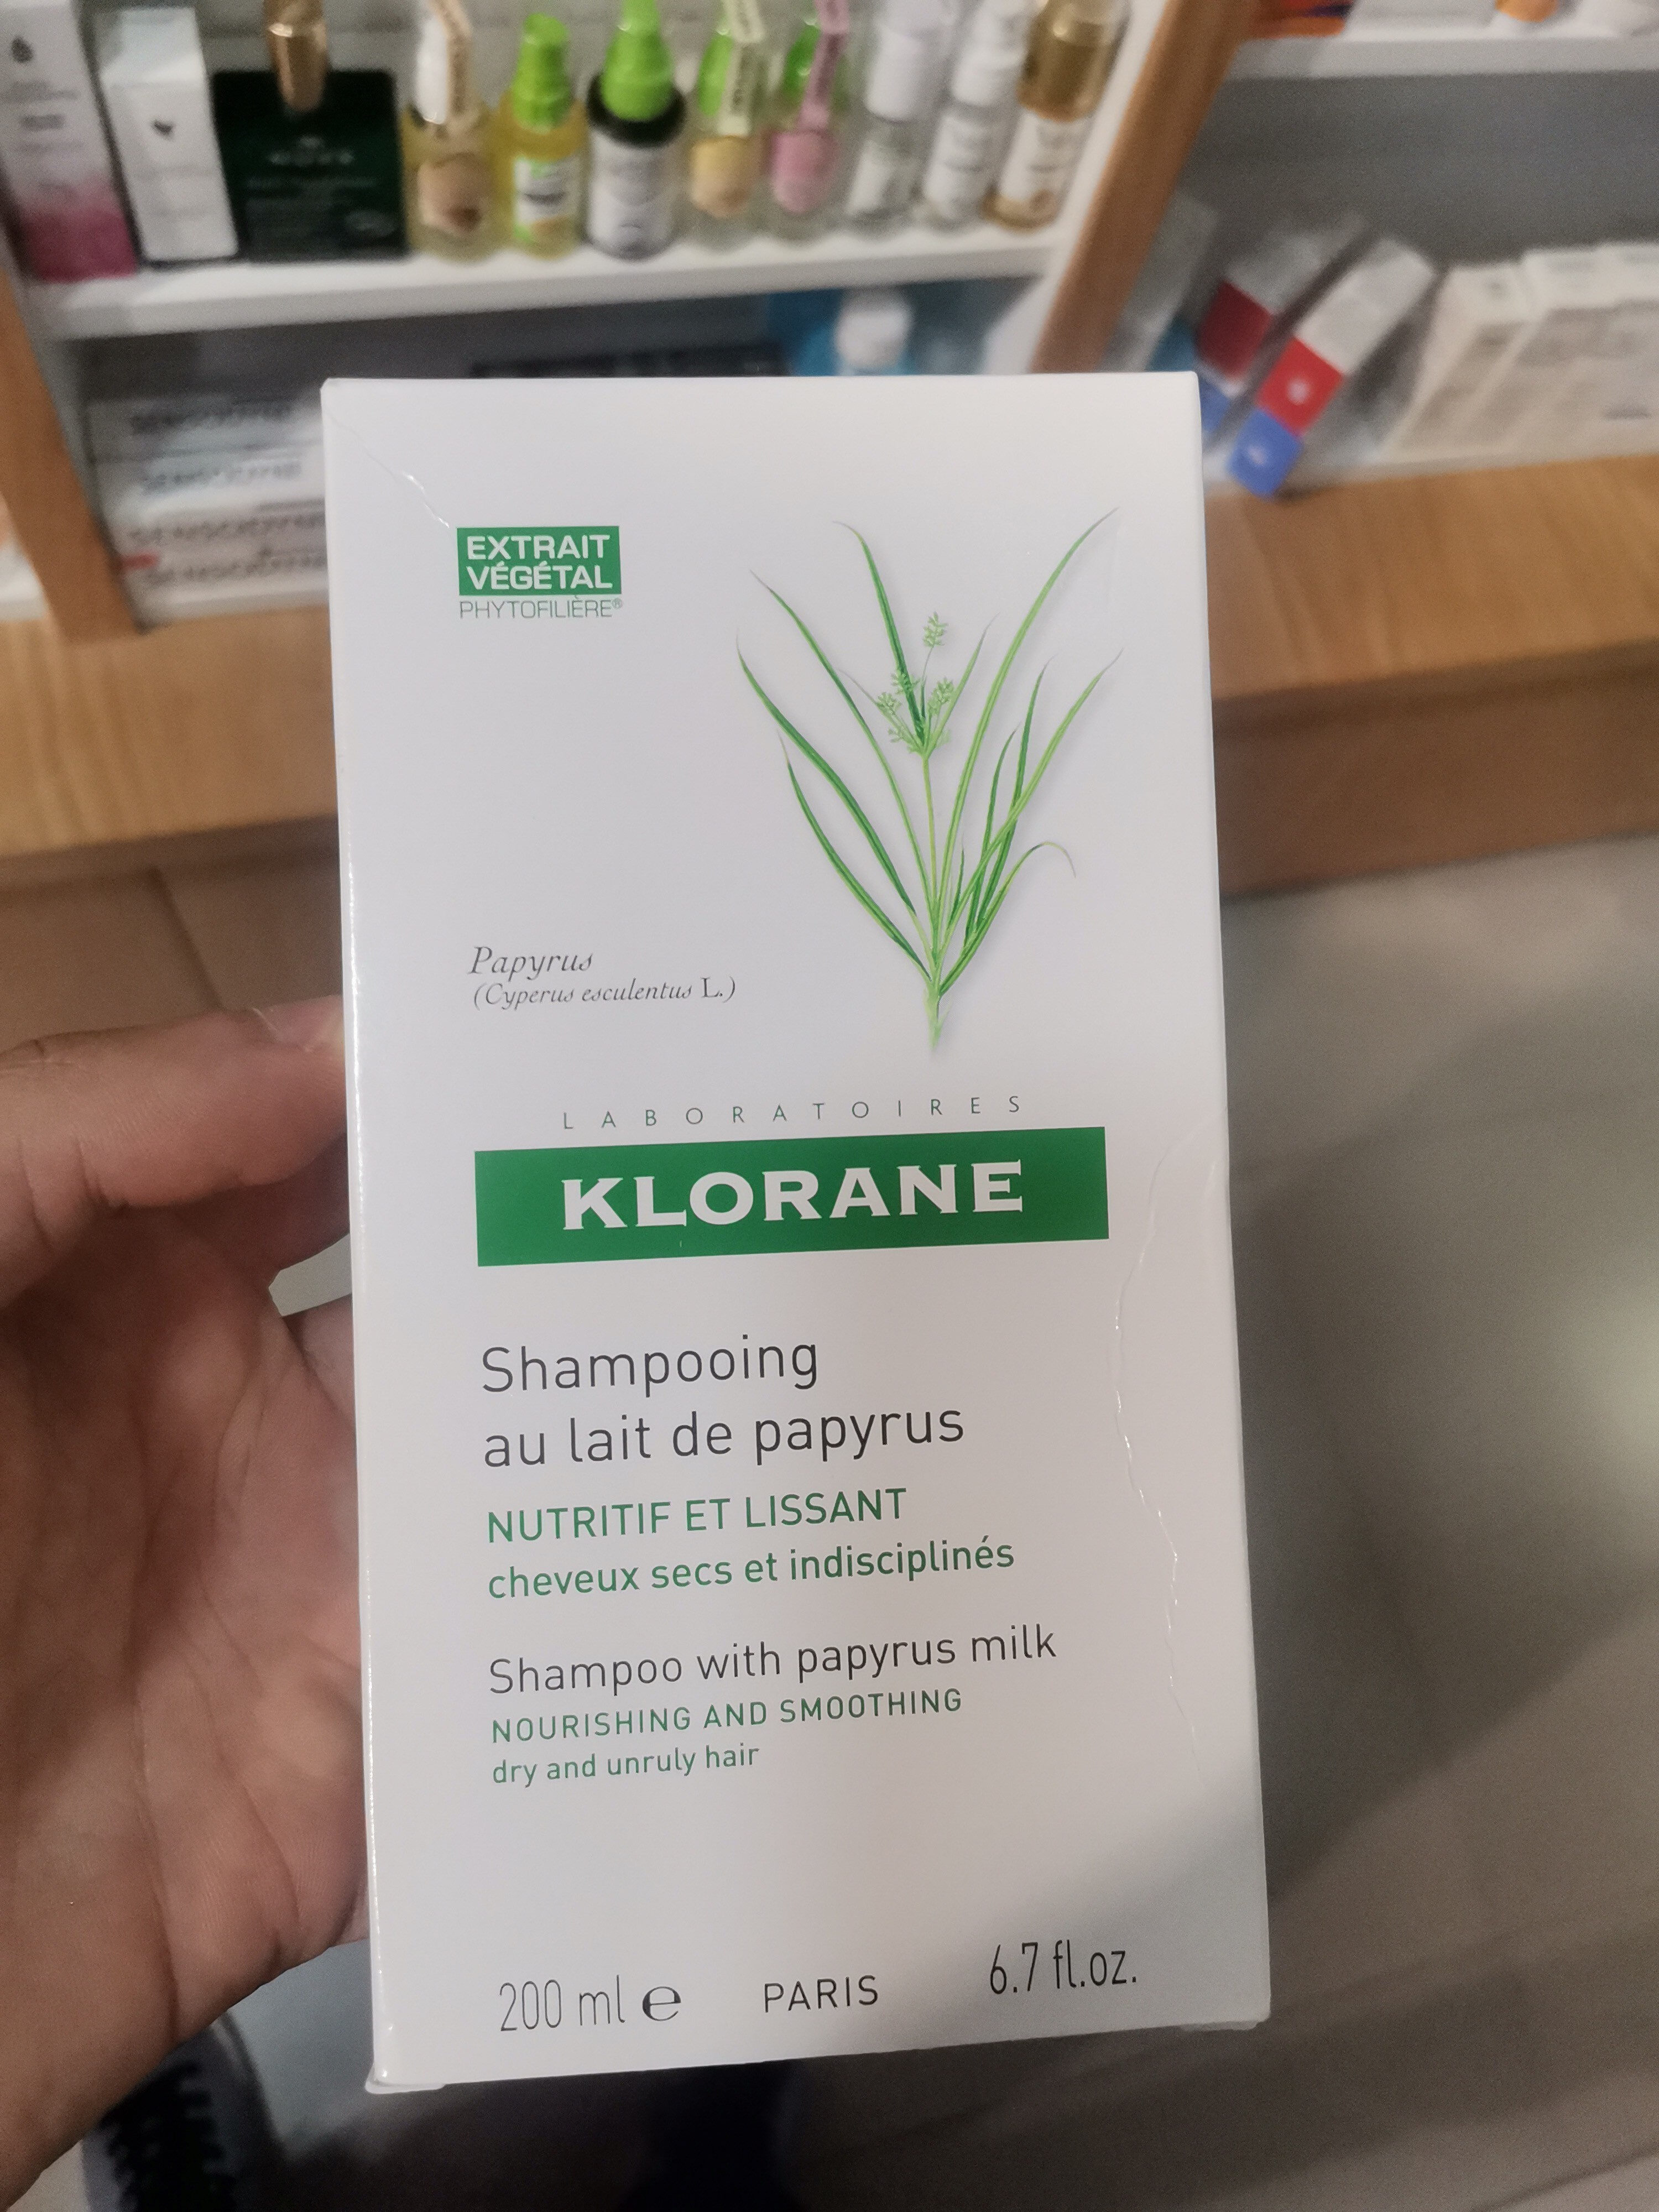 Klorane Shampoing au lait de papyrus - Produto - fr